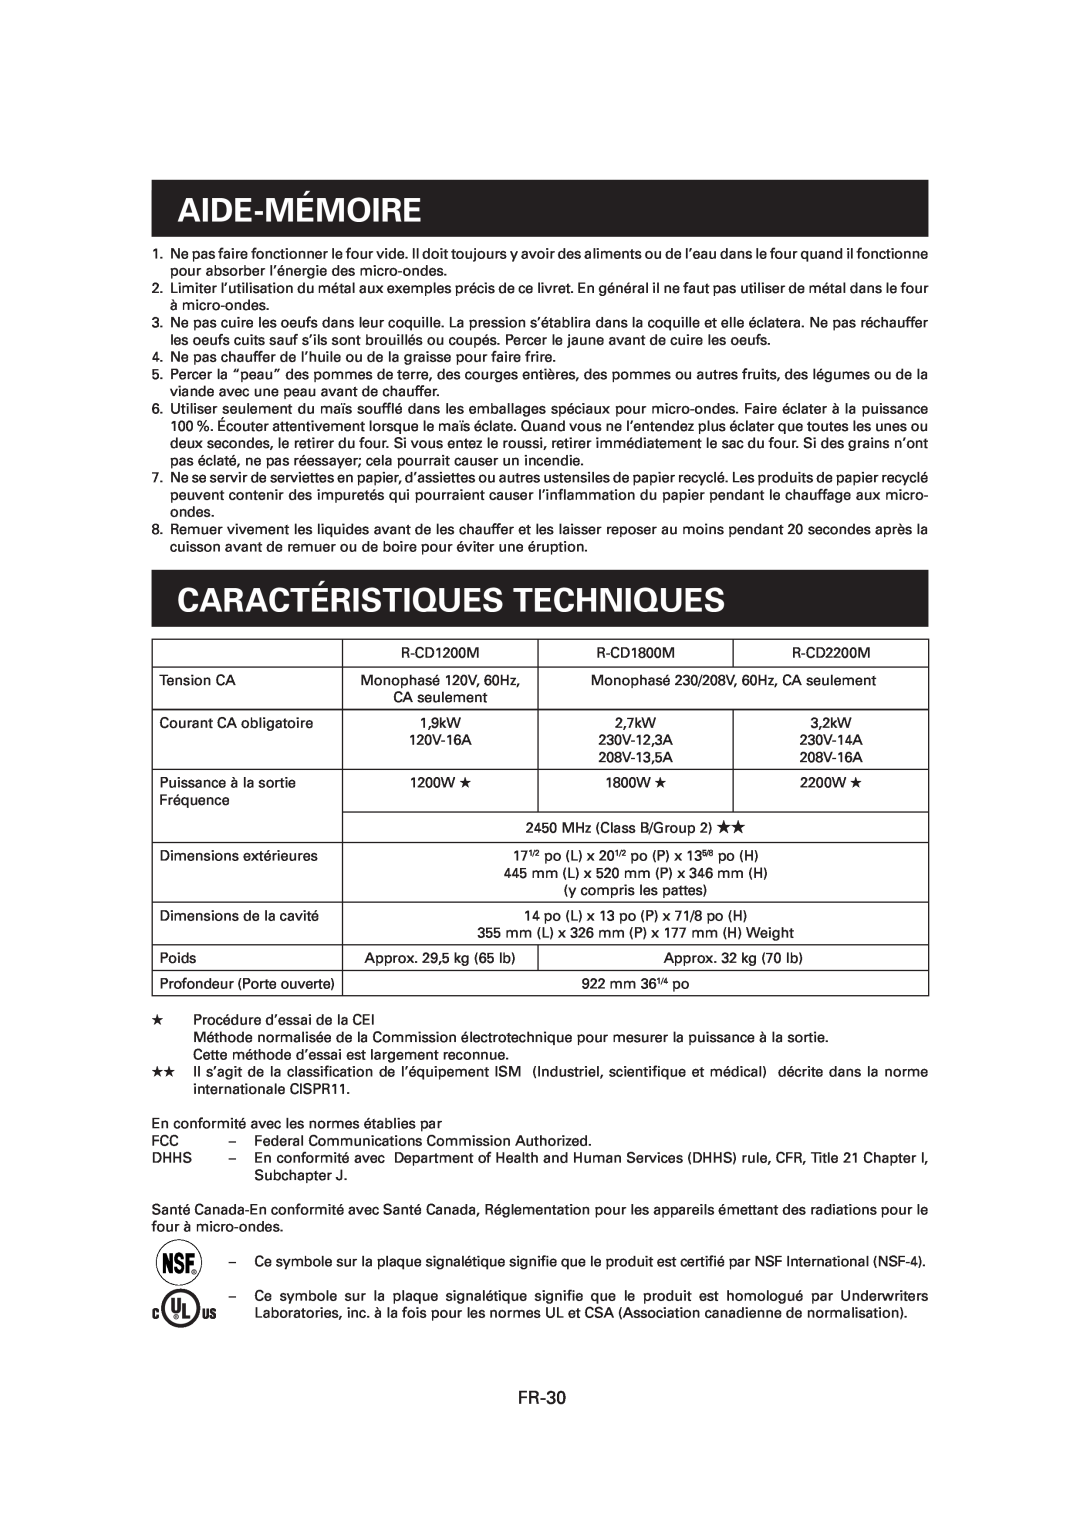 Sharp CD1800M, R-CD1200M, CD2200M operation manual Aide-Mémoire, Caractéristiques Techniques, FR-30 